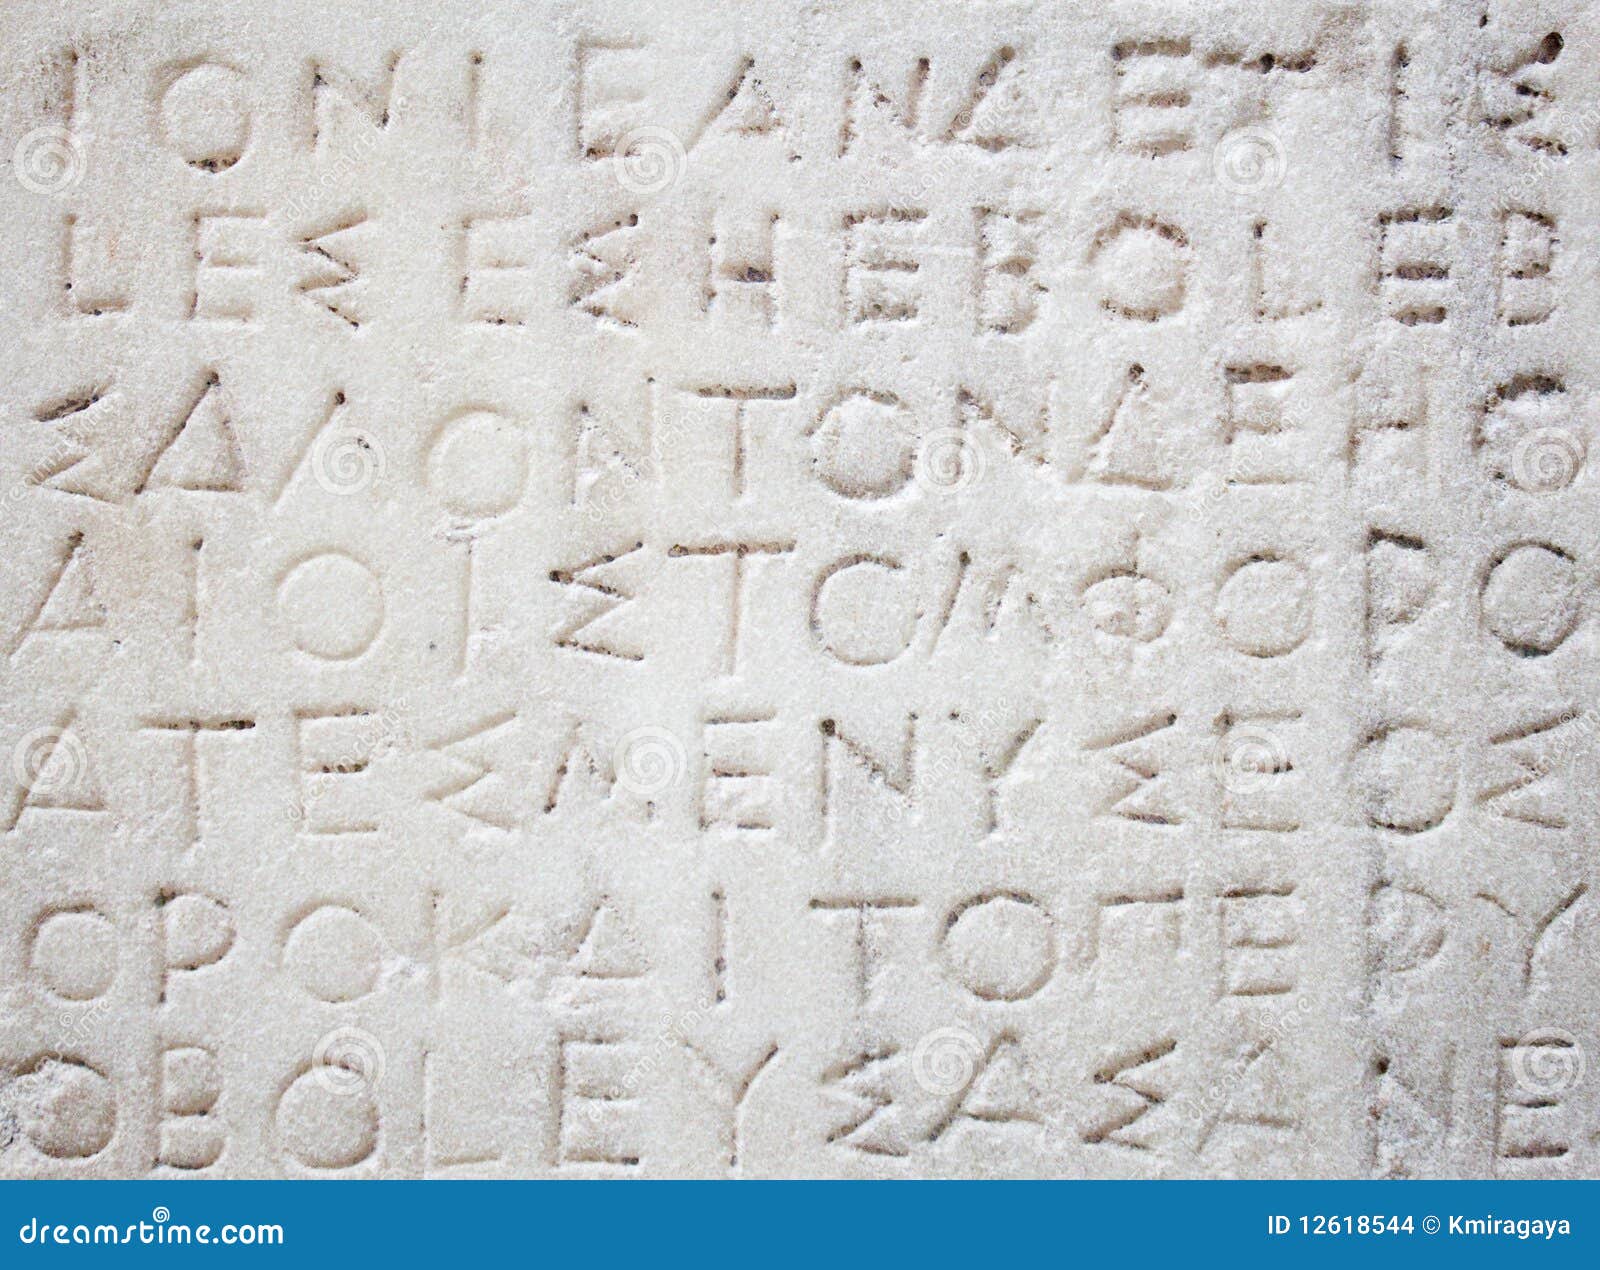 Пишущий на греческий. Греческие надписи. Надписи на греческих храмах. Надпись в греческом стиле. Греческие надписи на камнях.